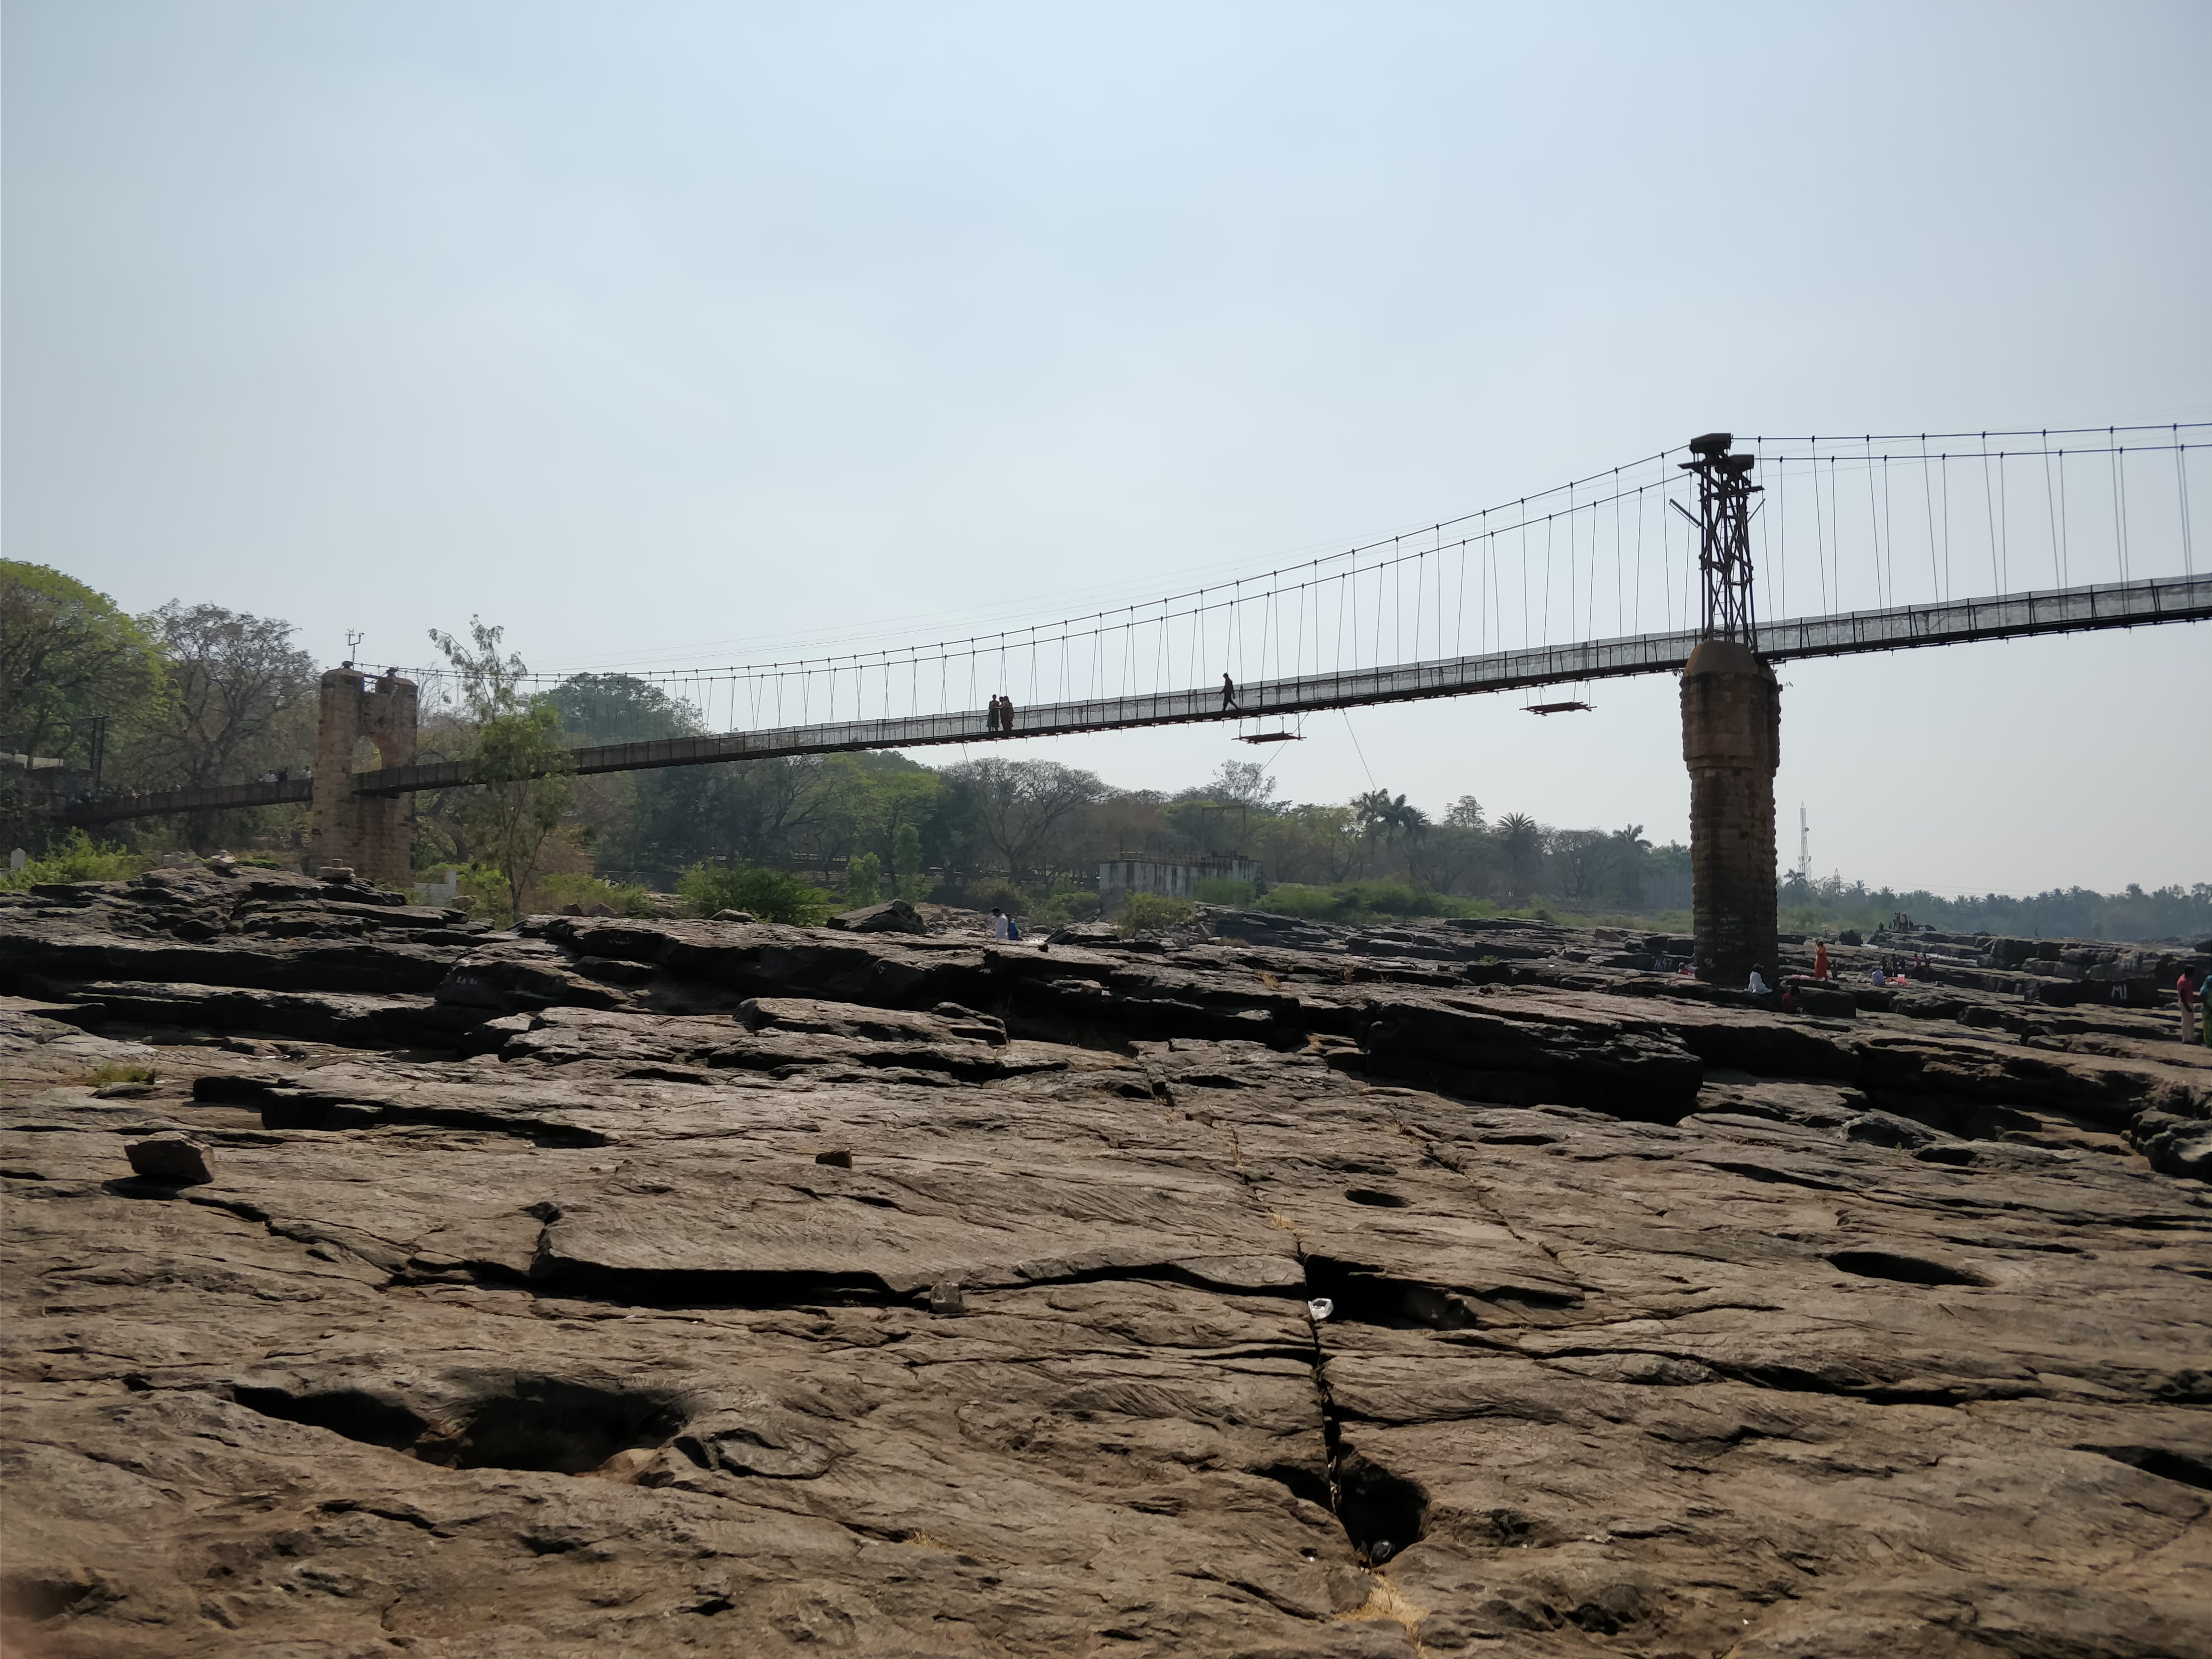 another click of the bridge - gokak falls